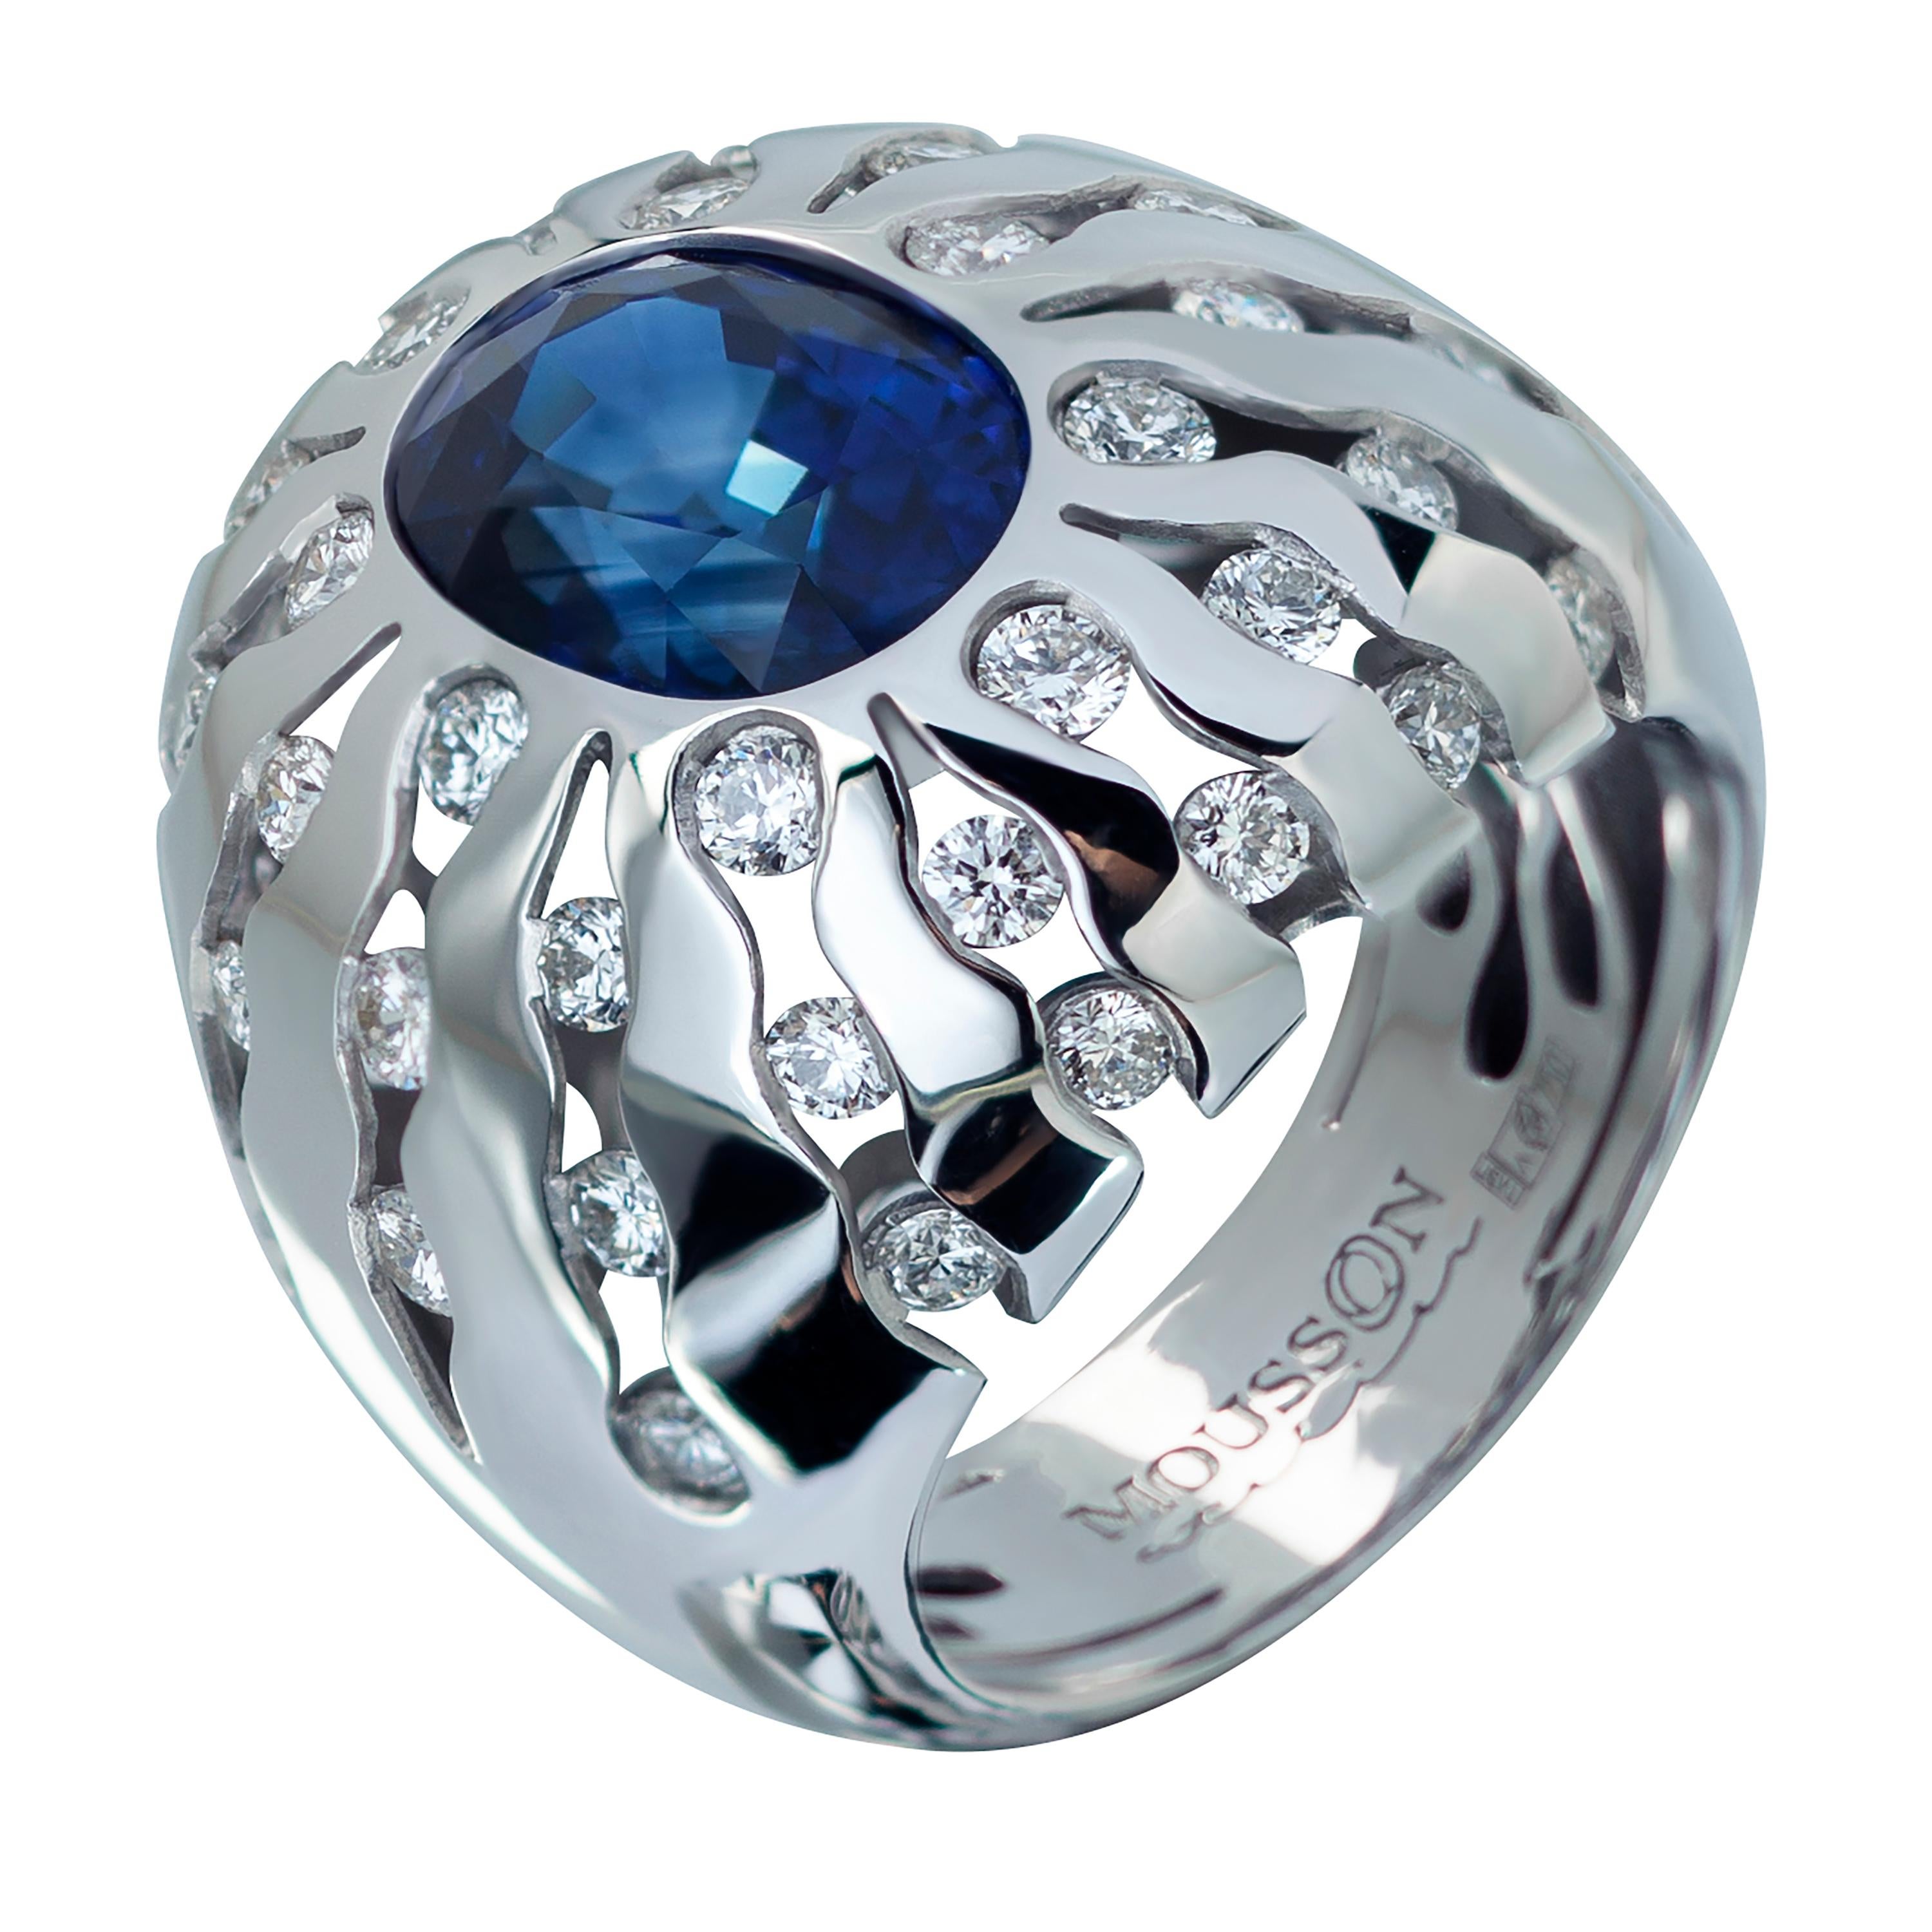 GRS Certified Royal Blue Sapphire Diamonds Suite en or blanc 18 carats
Bien que ces saphirs bleus royaux totalisant 6,03 ct pour la bague et 8,03 ct pour les boucles d'oreilles se suffisent à eux-mêmes, ils sont associés à des diamants scintillants